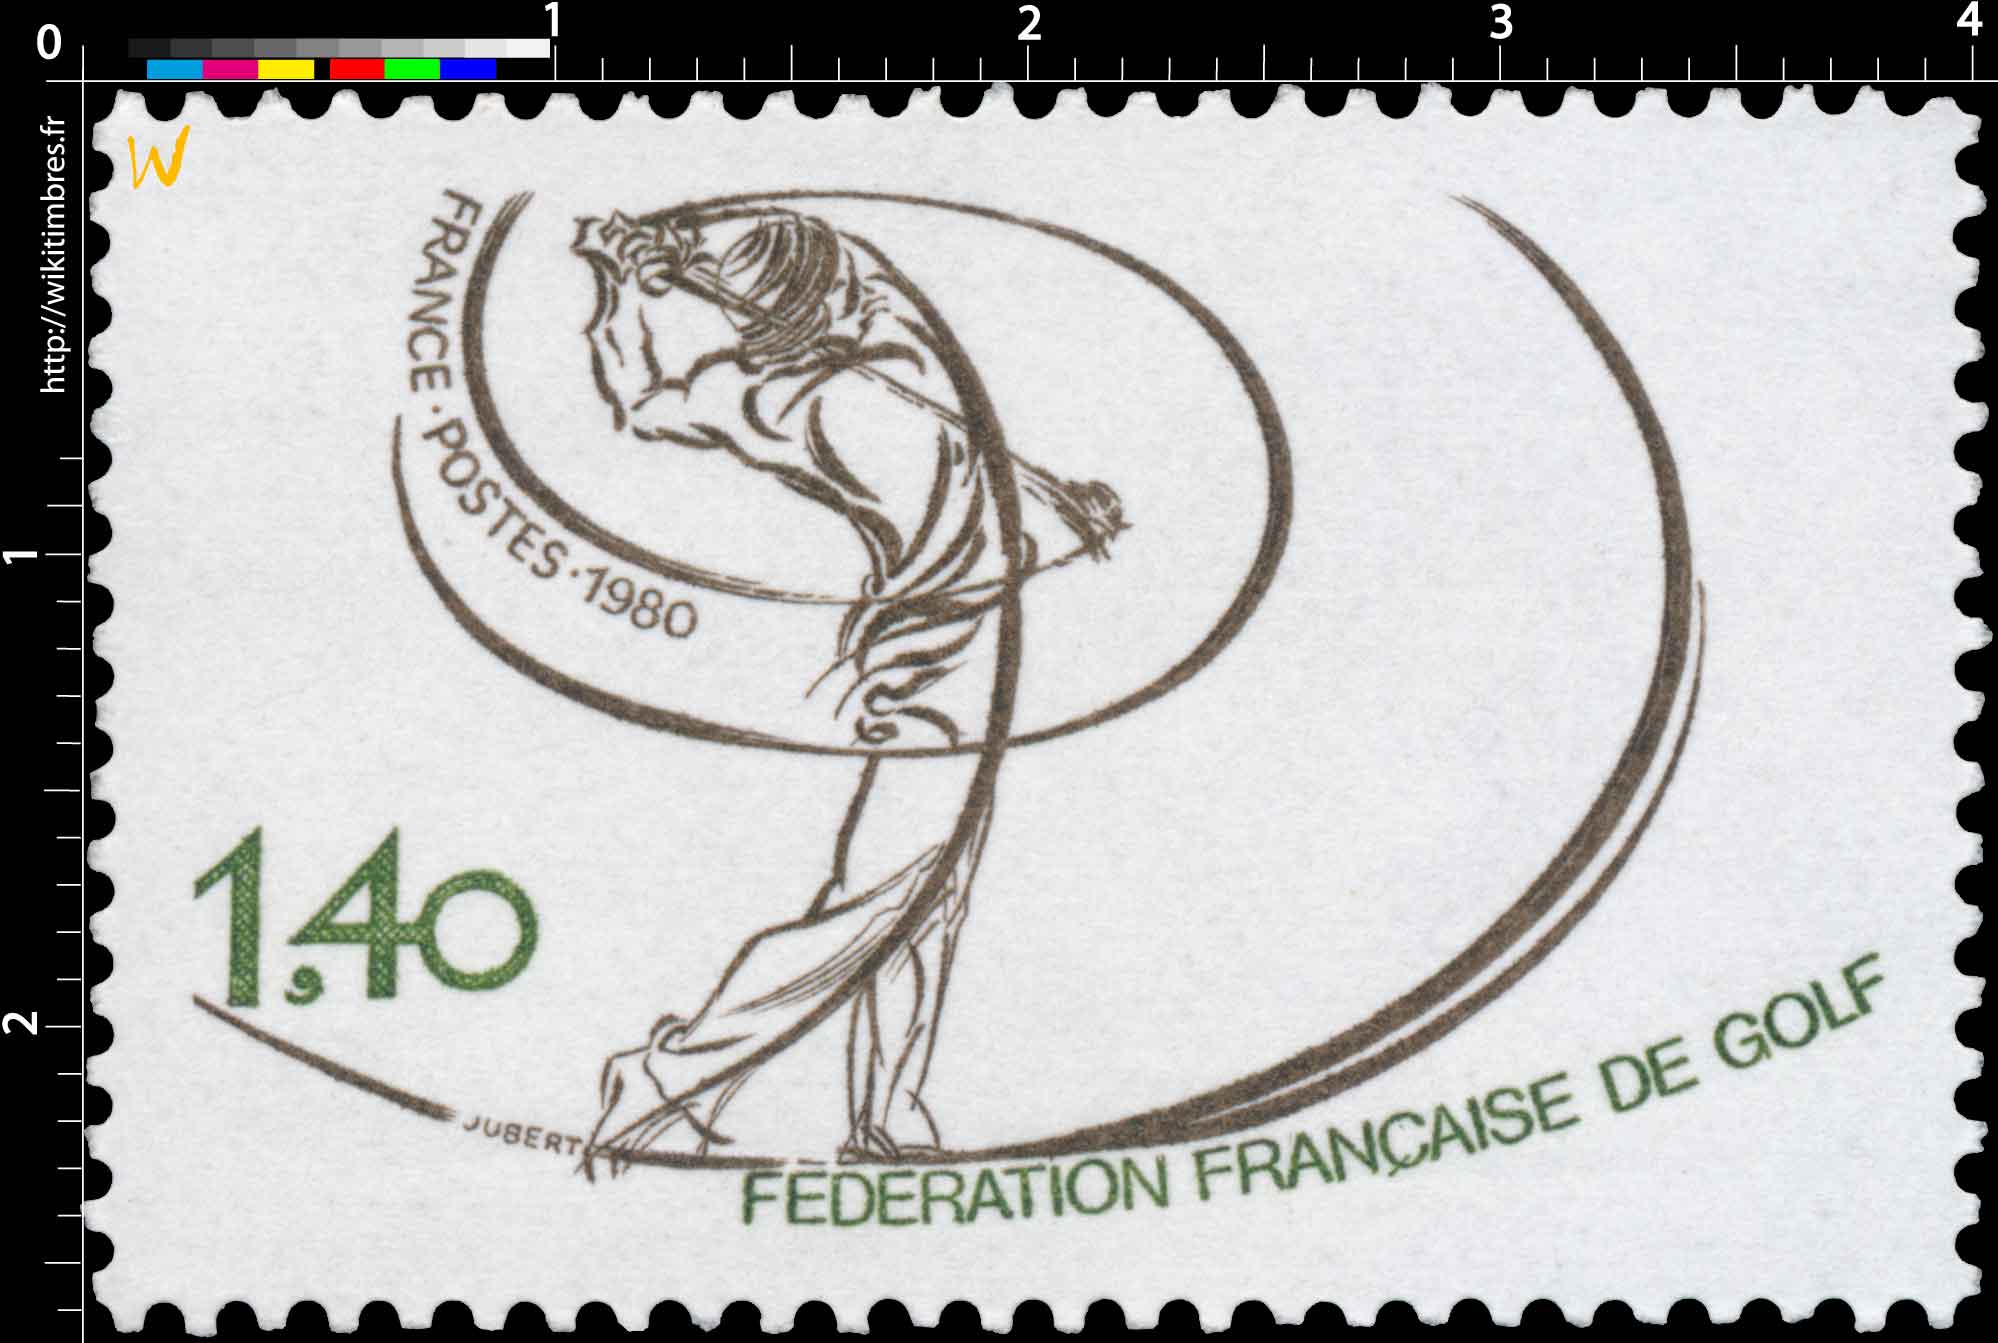 1980 FÉDÉRATION FRANÇAISE DE GOLF